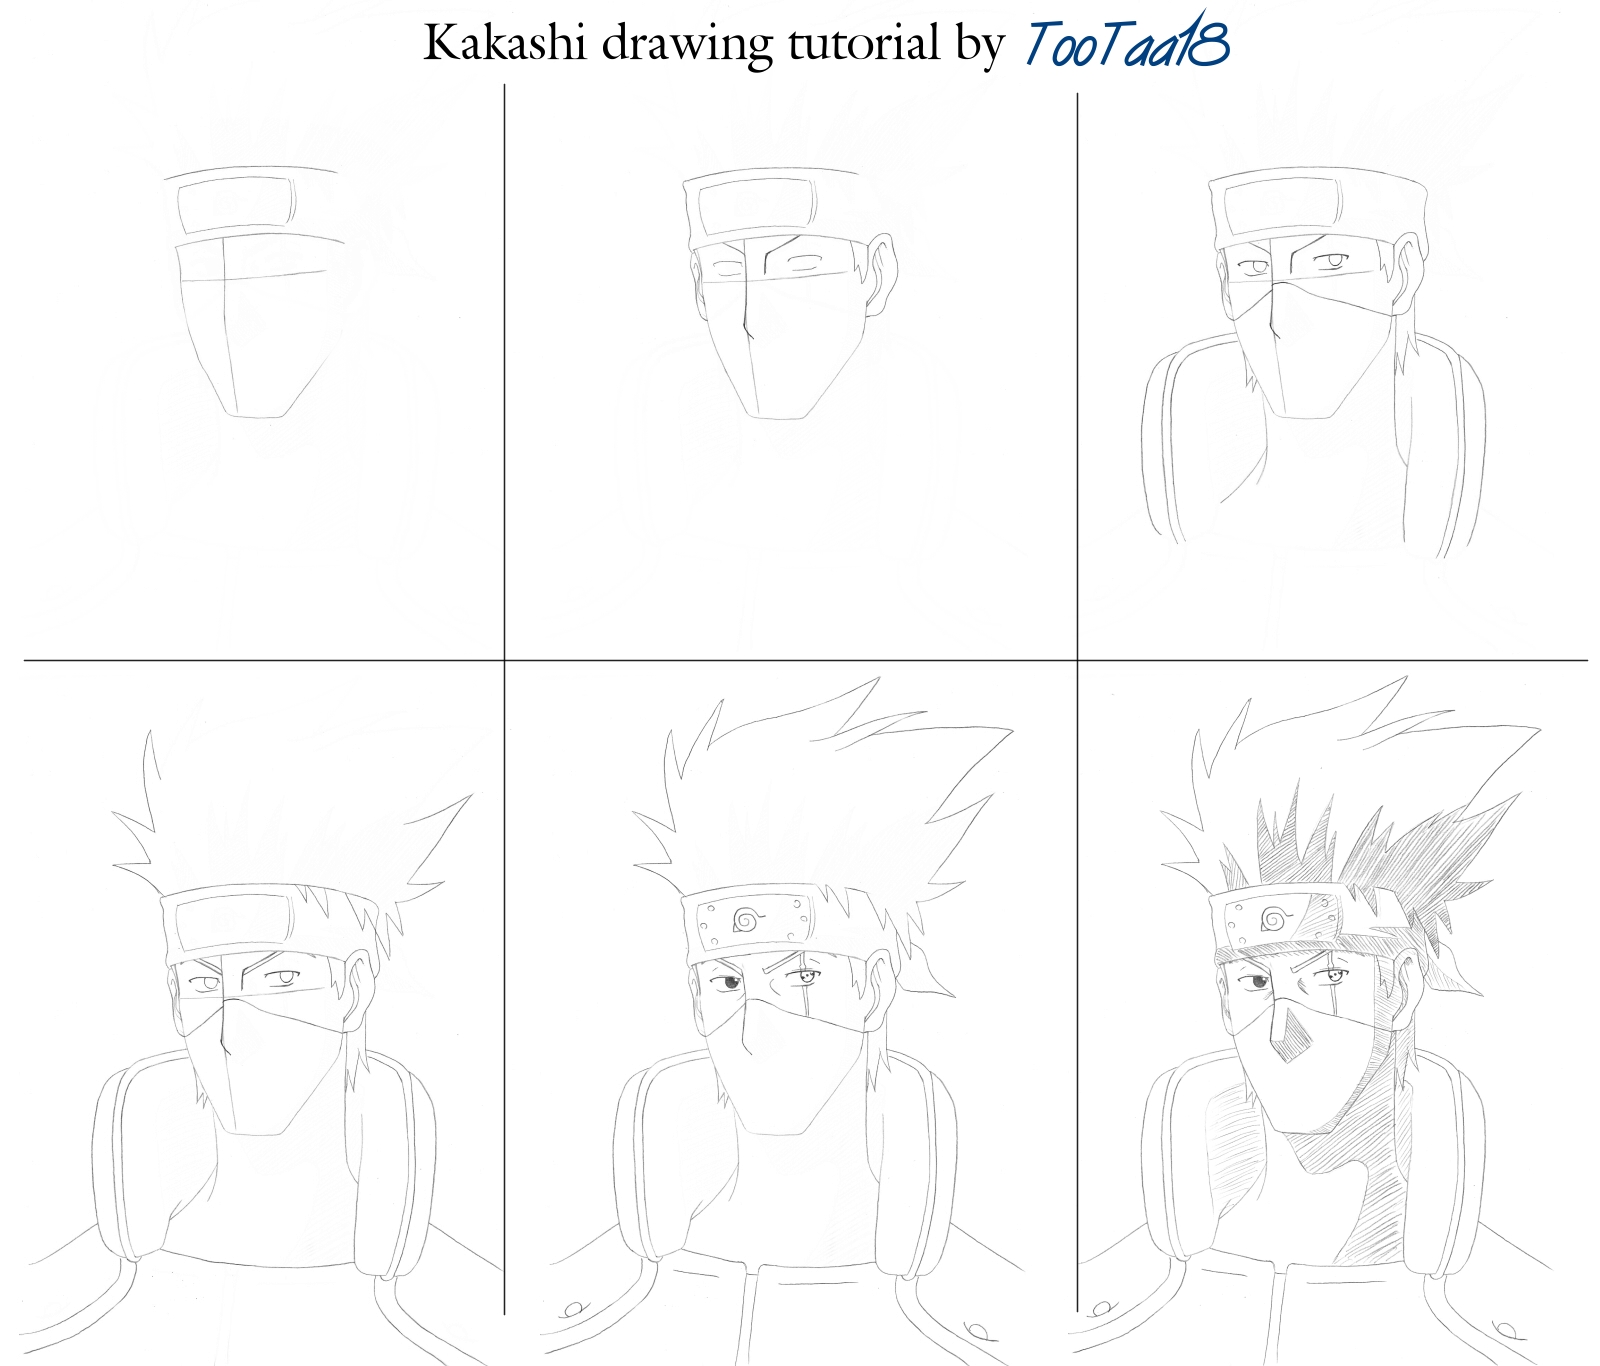 Kakashi drawing tutorial